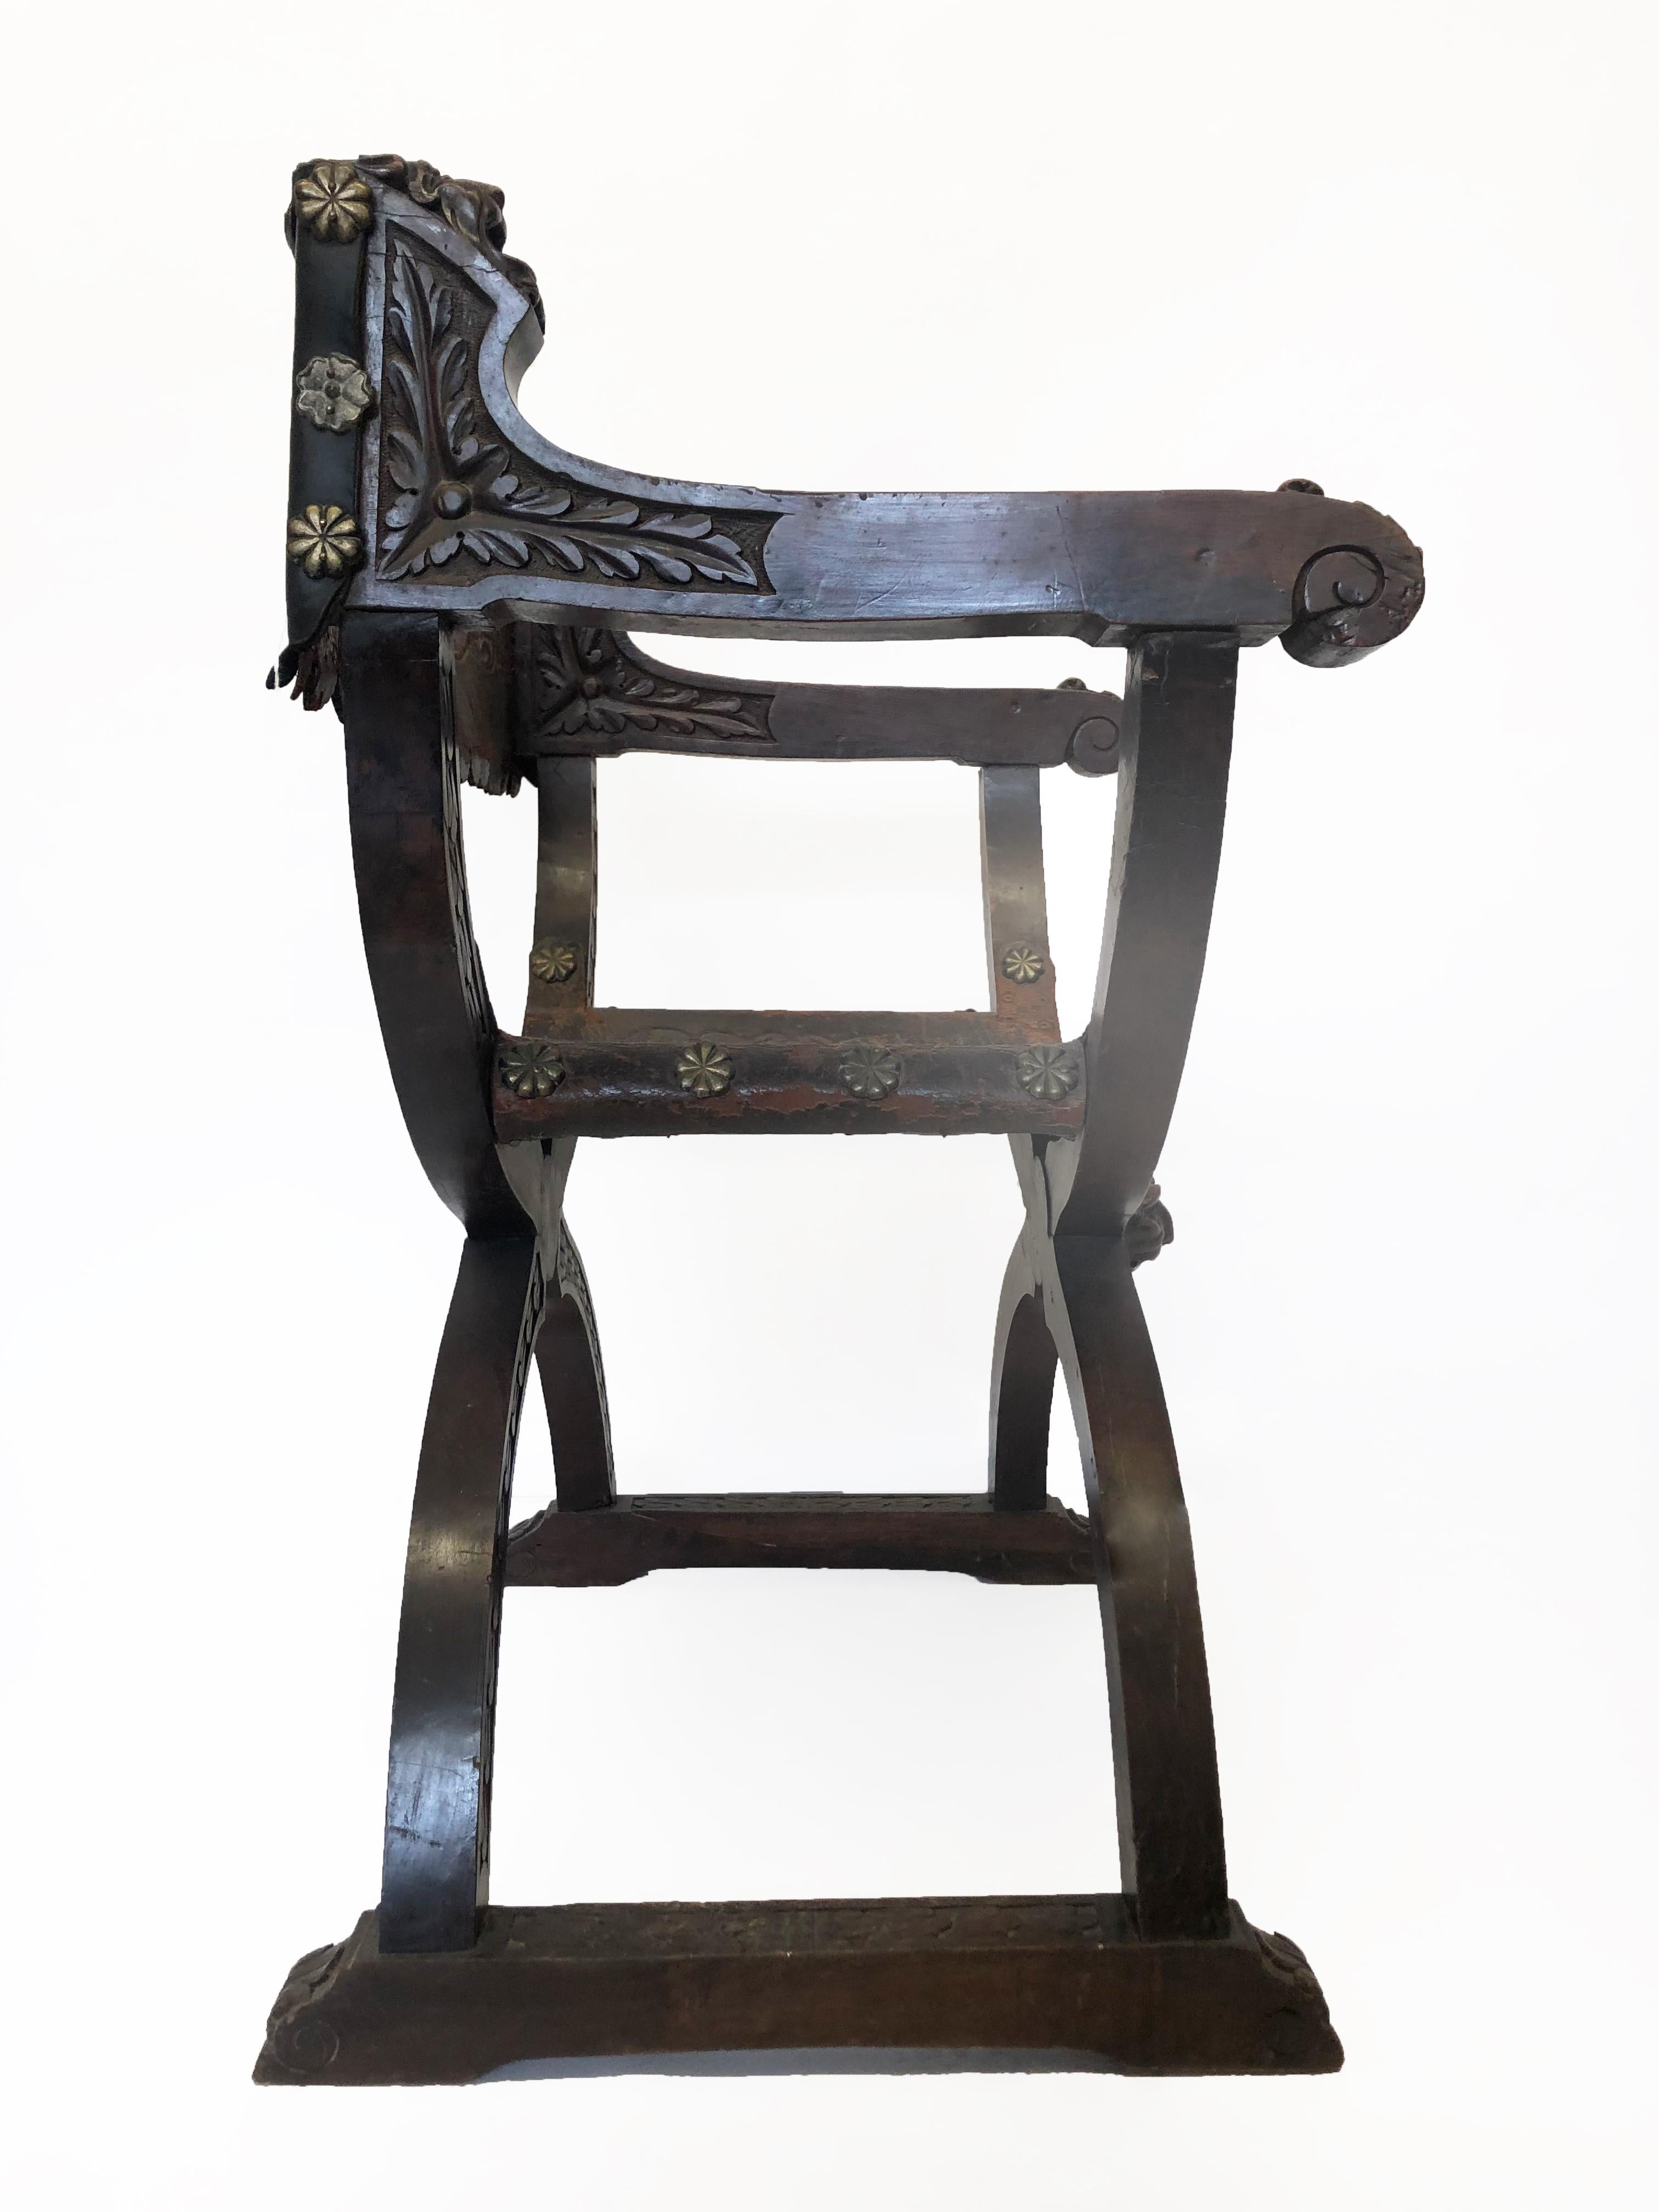 Il s'agit d'un fauteuil Dante ou Savonarola en bois et cuir. Le travail du bois est un cadre en forme de X avec un dossier et une assise en cuir. L'ensemble de la chaise est orné de sculptures sur les accoudoirs à volutes et de détails sur le cadre